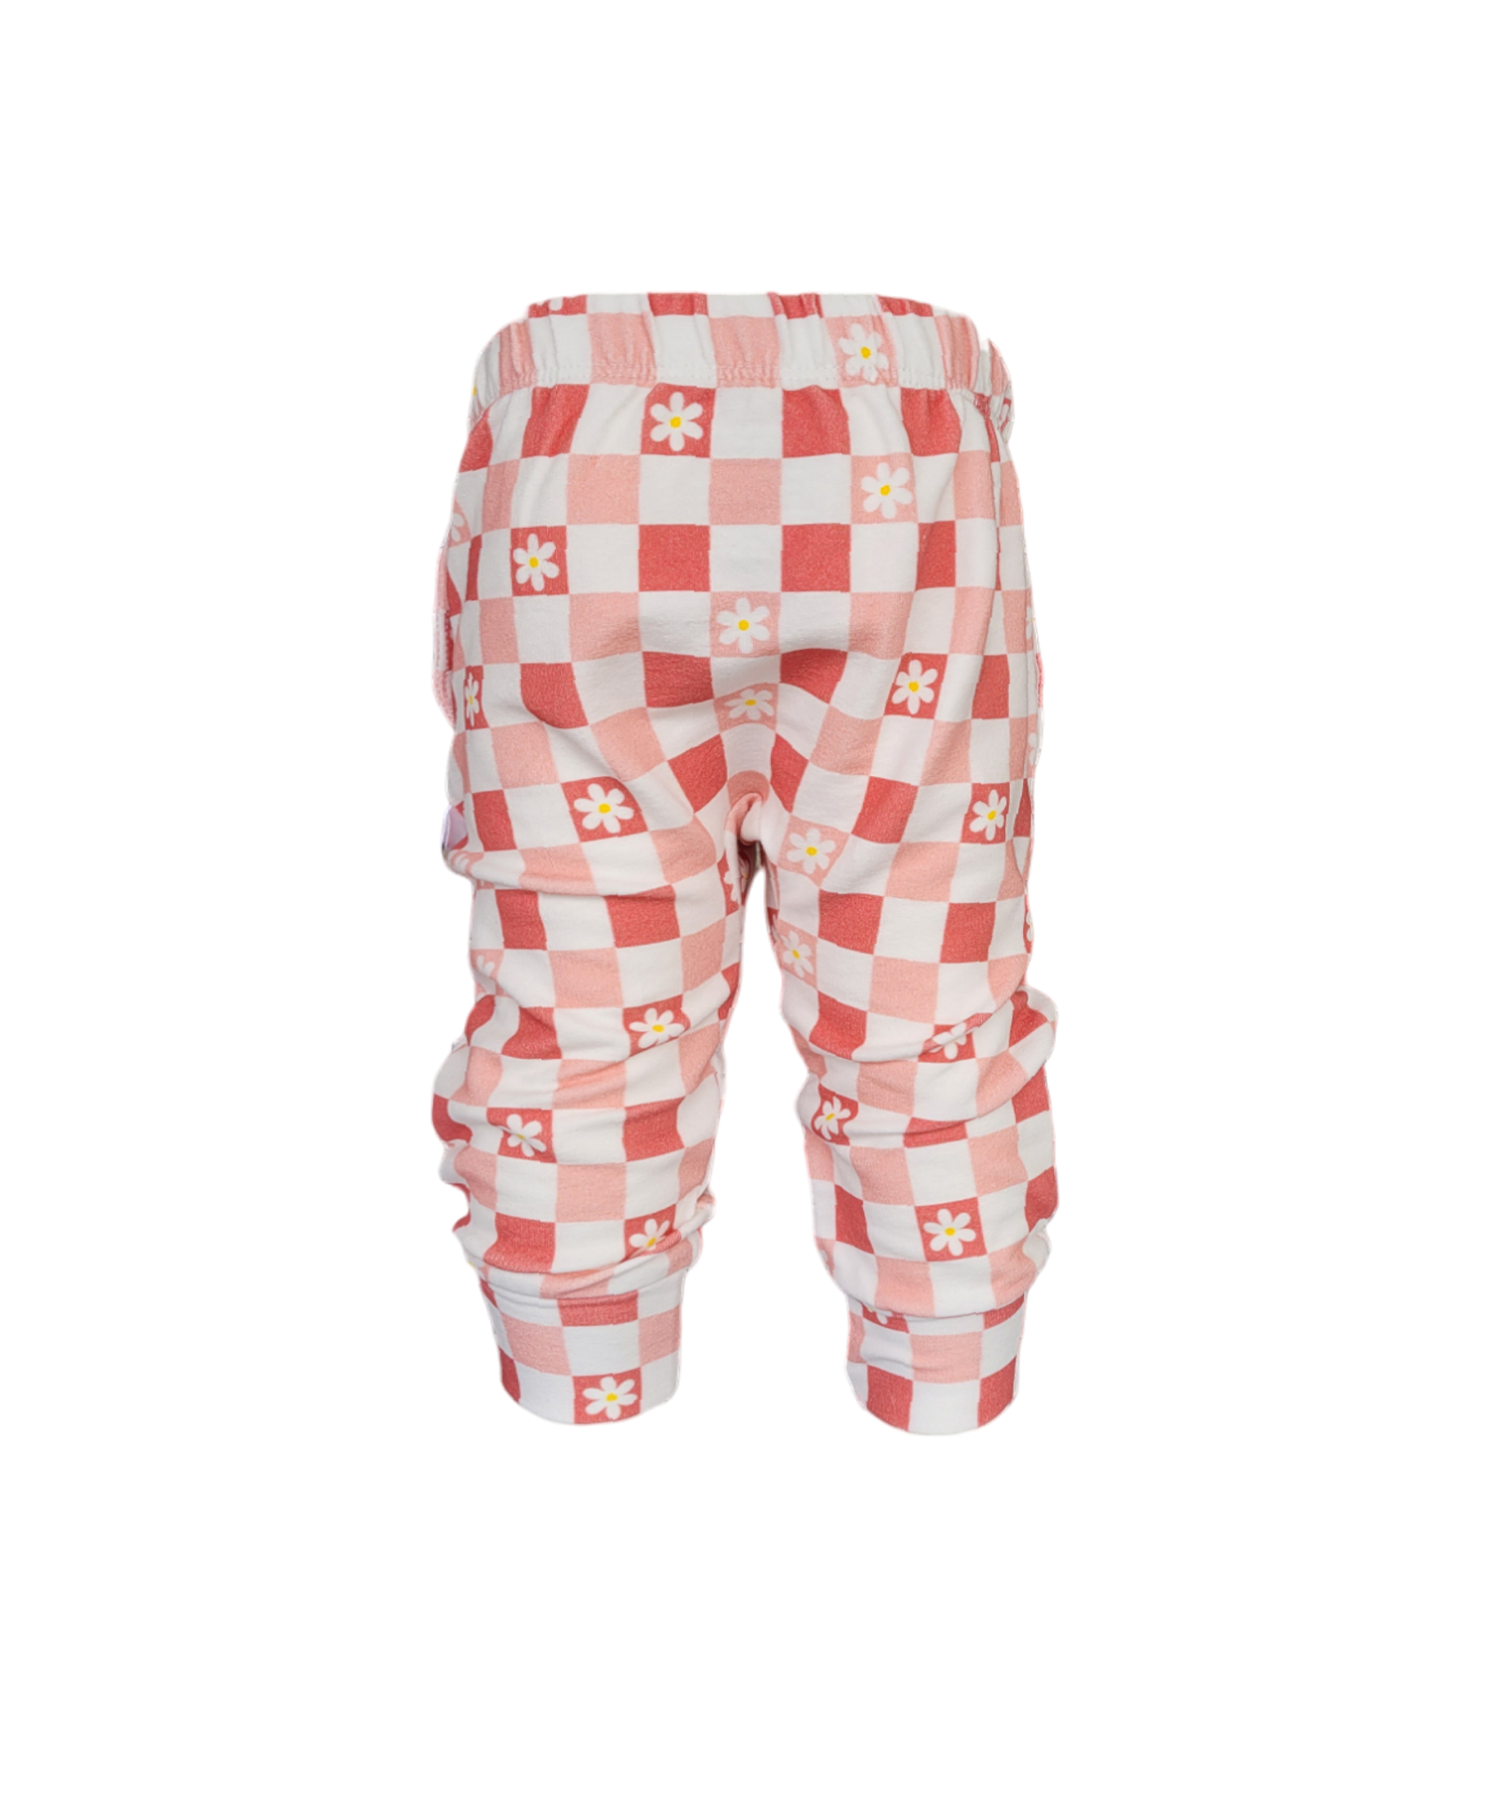 Back of Pink Daisy Sweatpants. Organic white and Pink Checkered sweatpants with white daisy's. 